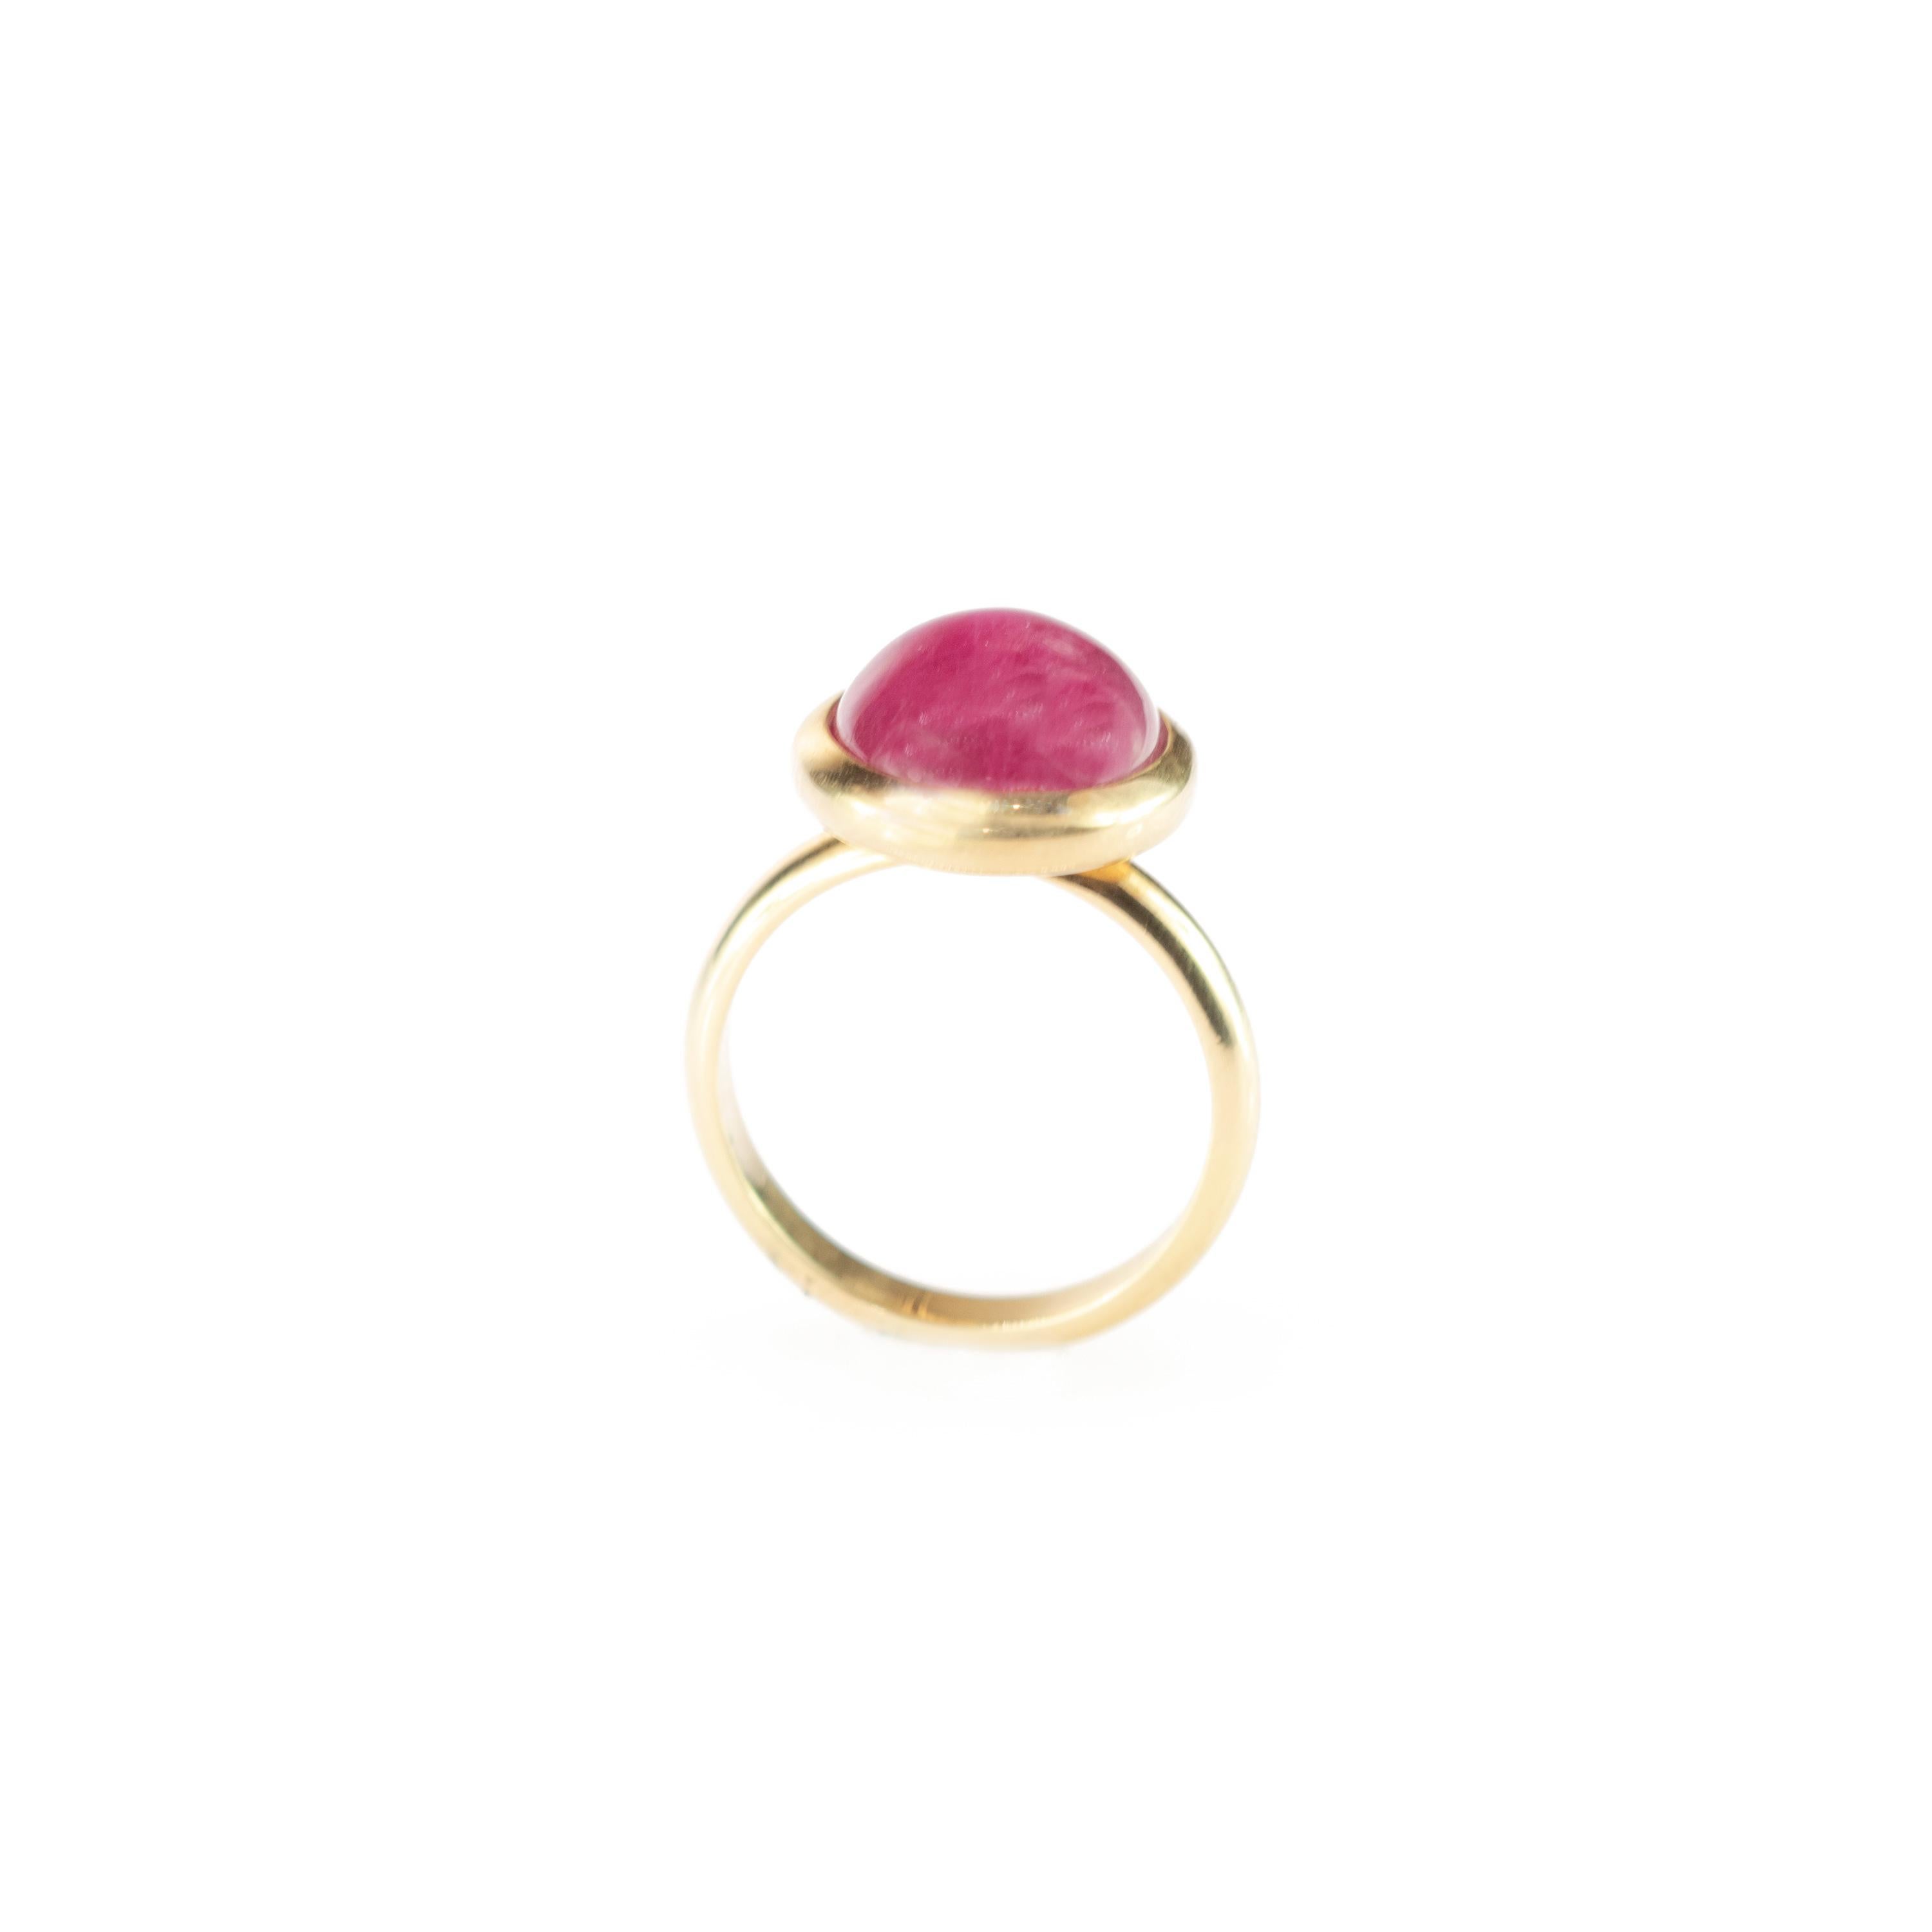 ओपल रत्न की अंगूठी (Opal Stone Ring) | ओपल रत्‍न शुक्र ग्रह का रत्‍न है और  इसे शुक्र ग्रह को मजबूत कर उसके अच्‍छे फल प्राप्‍त करने के लिए धारण किया  जाता